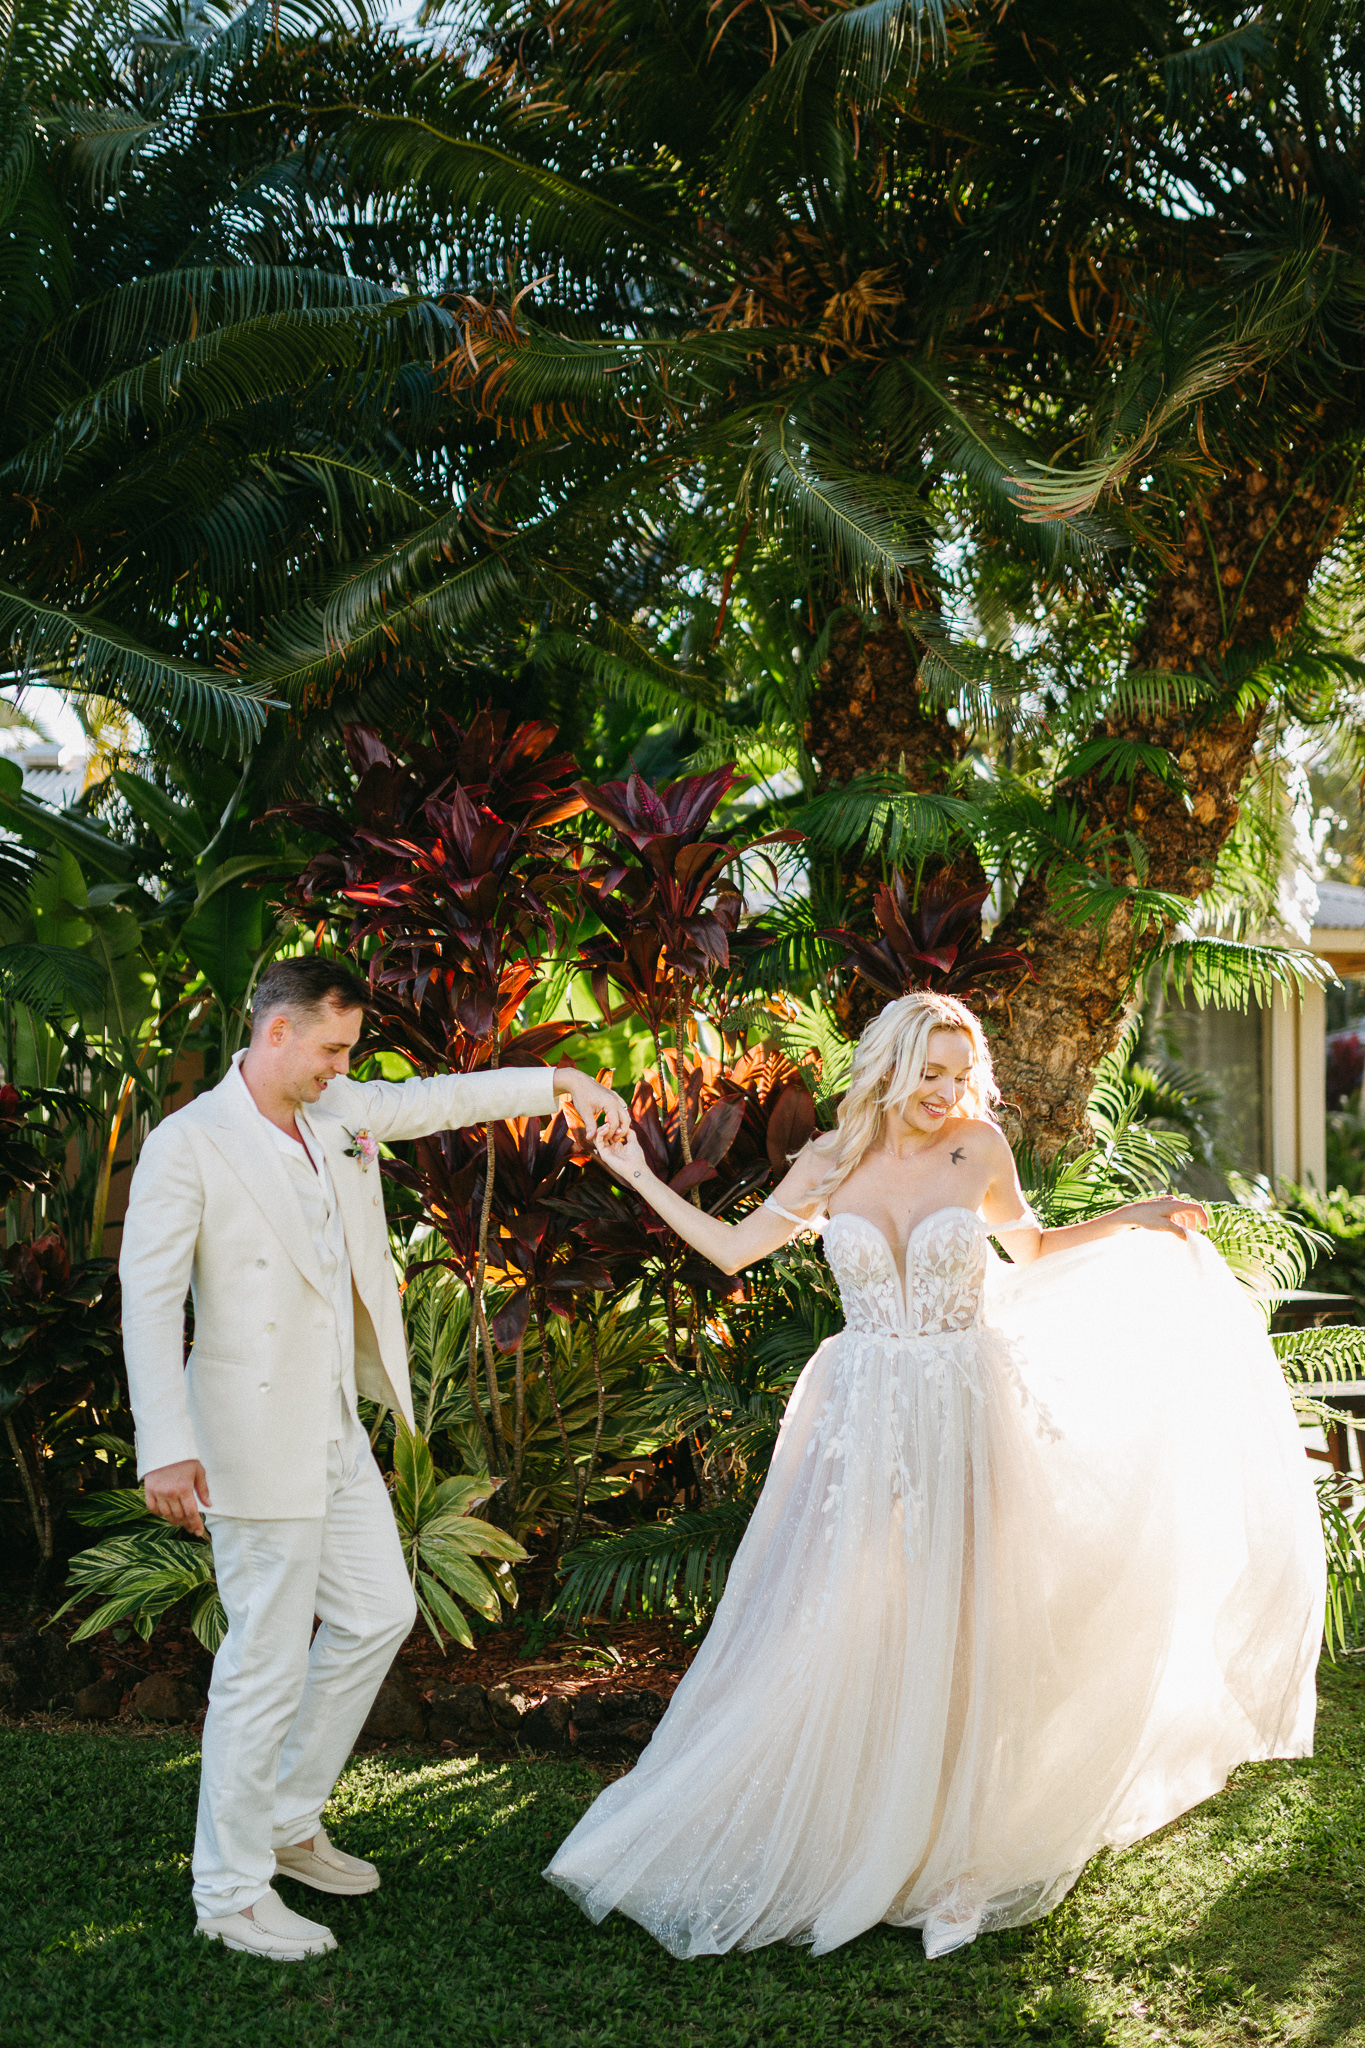 Intimate-backyard-elopement-kauai-beach-wedding-photoshoot-sunset-destination-hawaii—island-wedding-photographer-palm-trees-sarah-doucet-photography